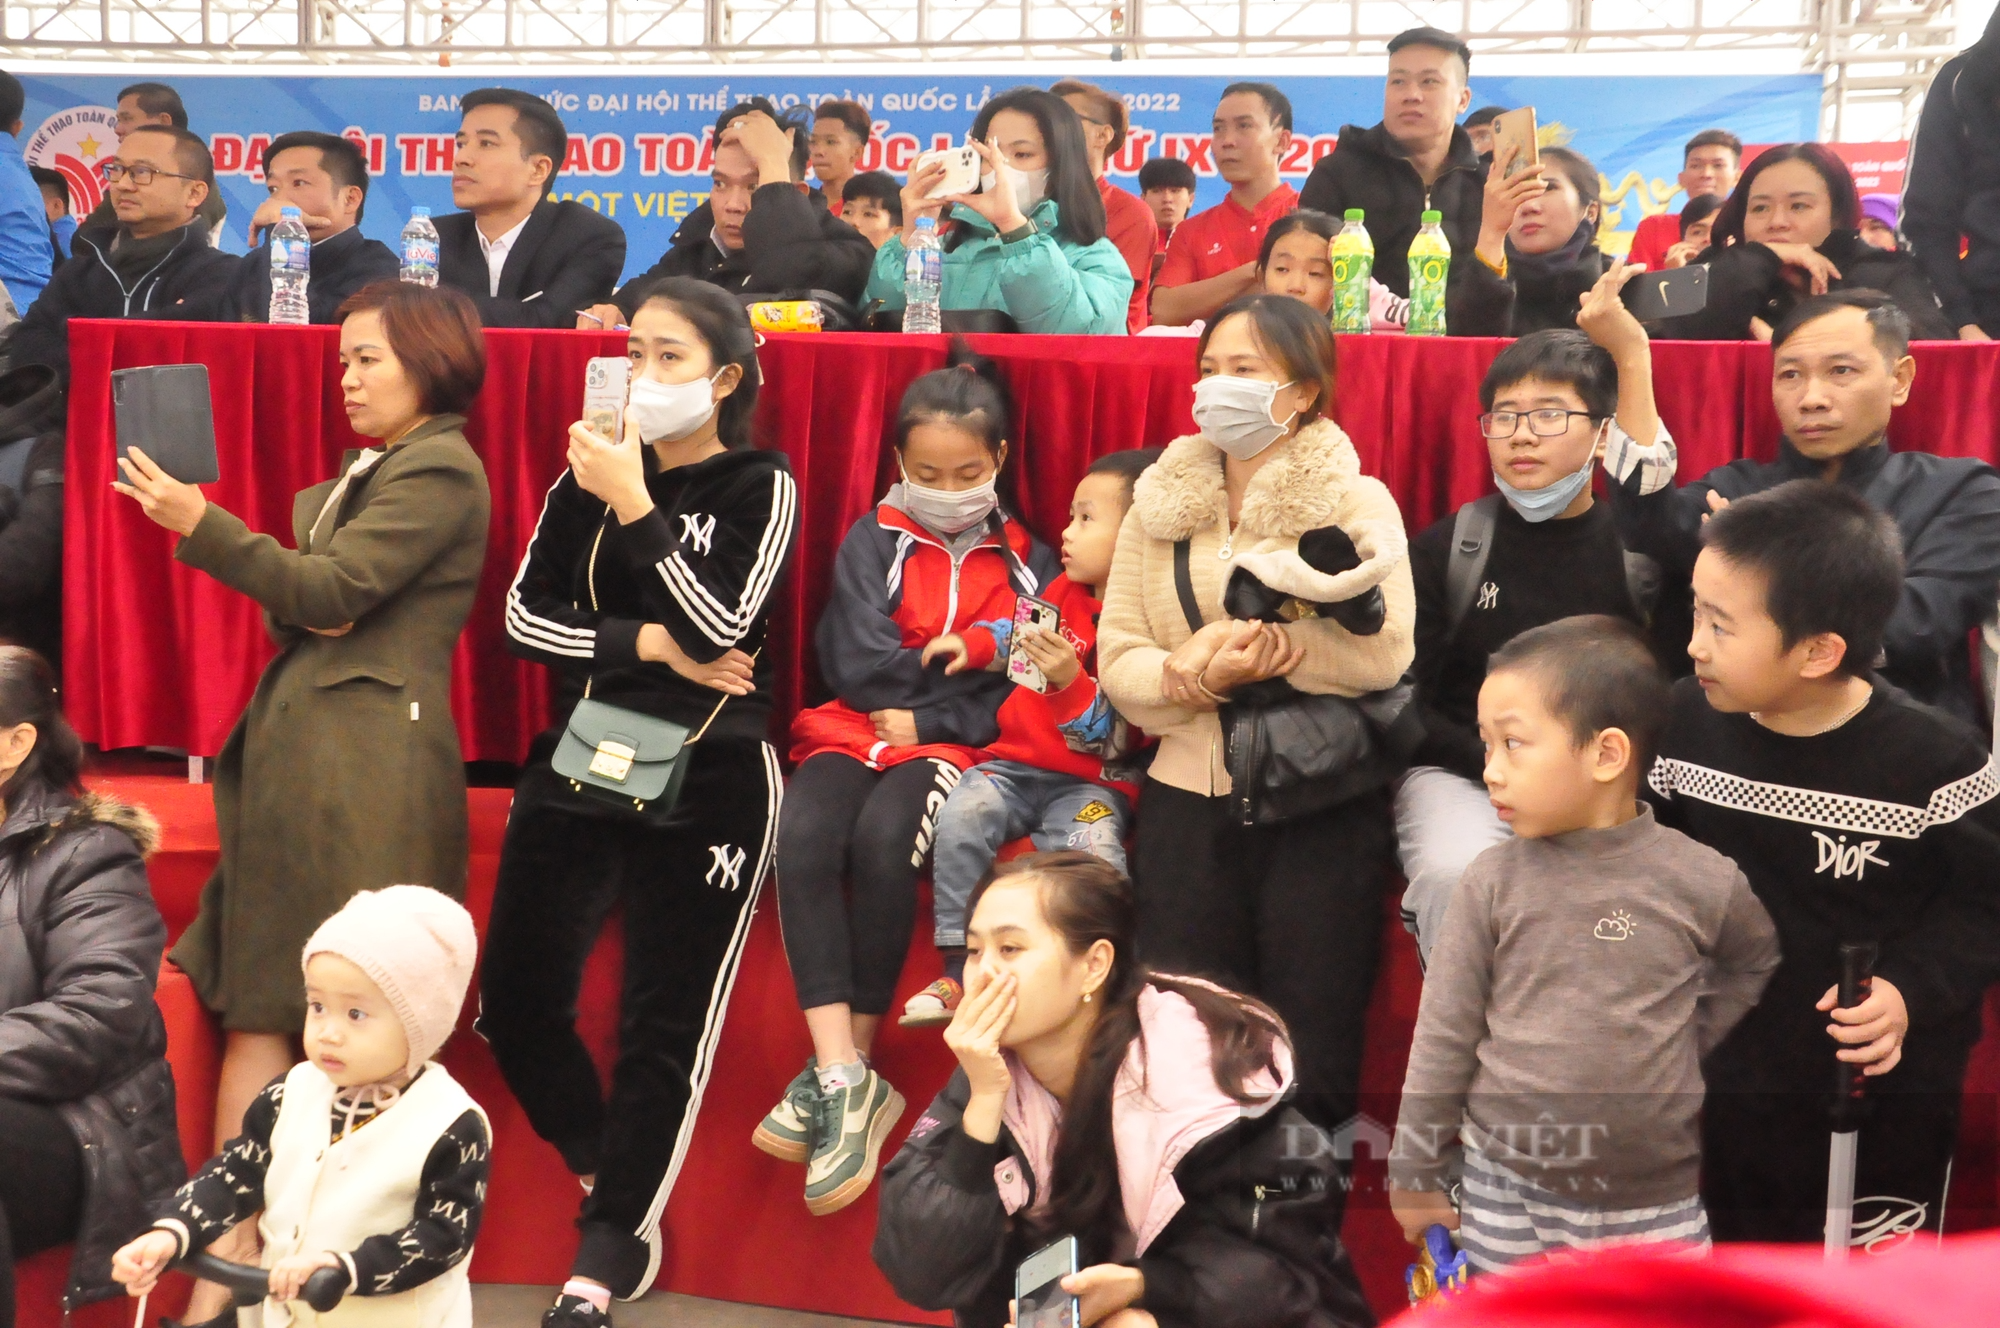 Khán giả nhí mê mẩn xem thi đấu lân sư rồng tại Đại hội Thể thao toàn quốc - Ảnh 6.